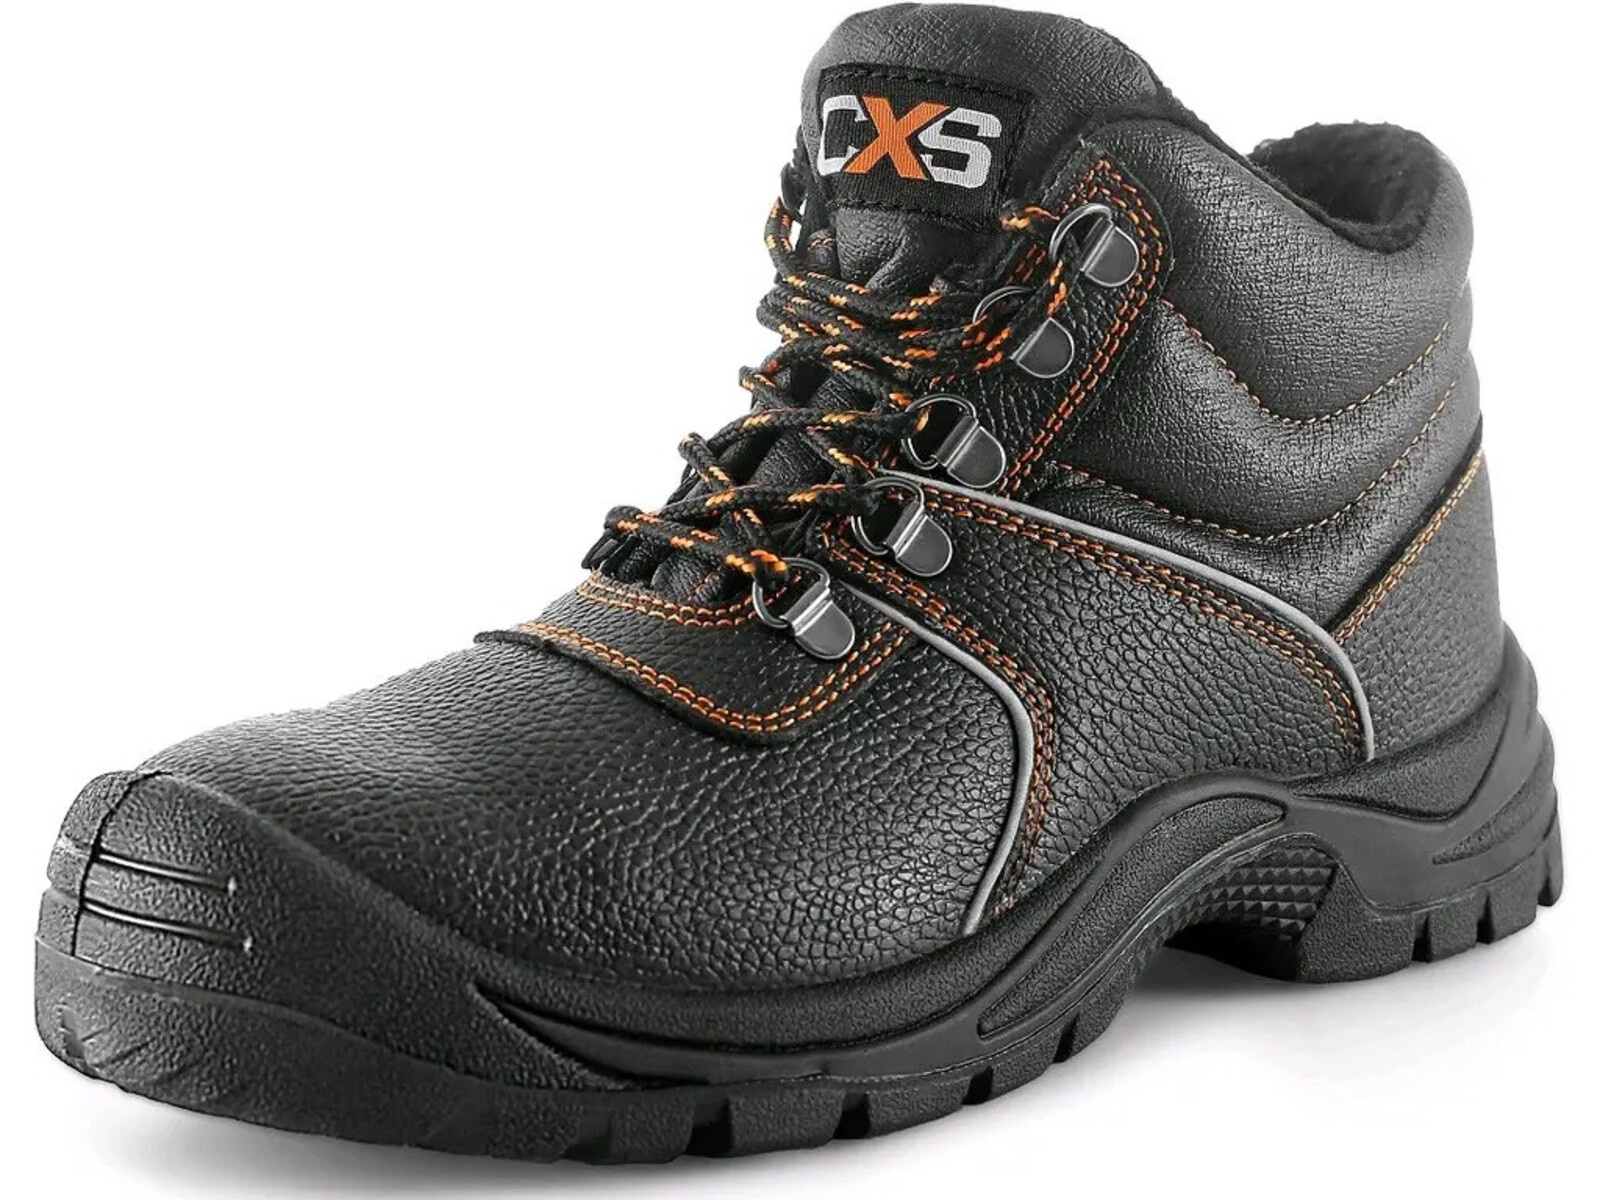 Zimná bezpečnostná členková obuv CXS Stone Apatit Winter S3 SRC - veľkosť: 47, farba: čierna/oranžová